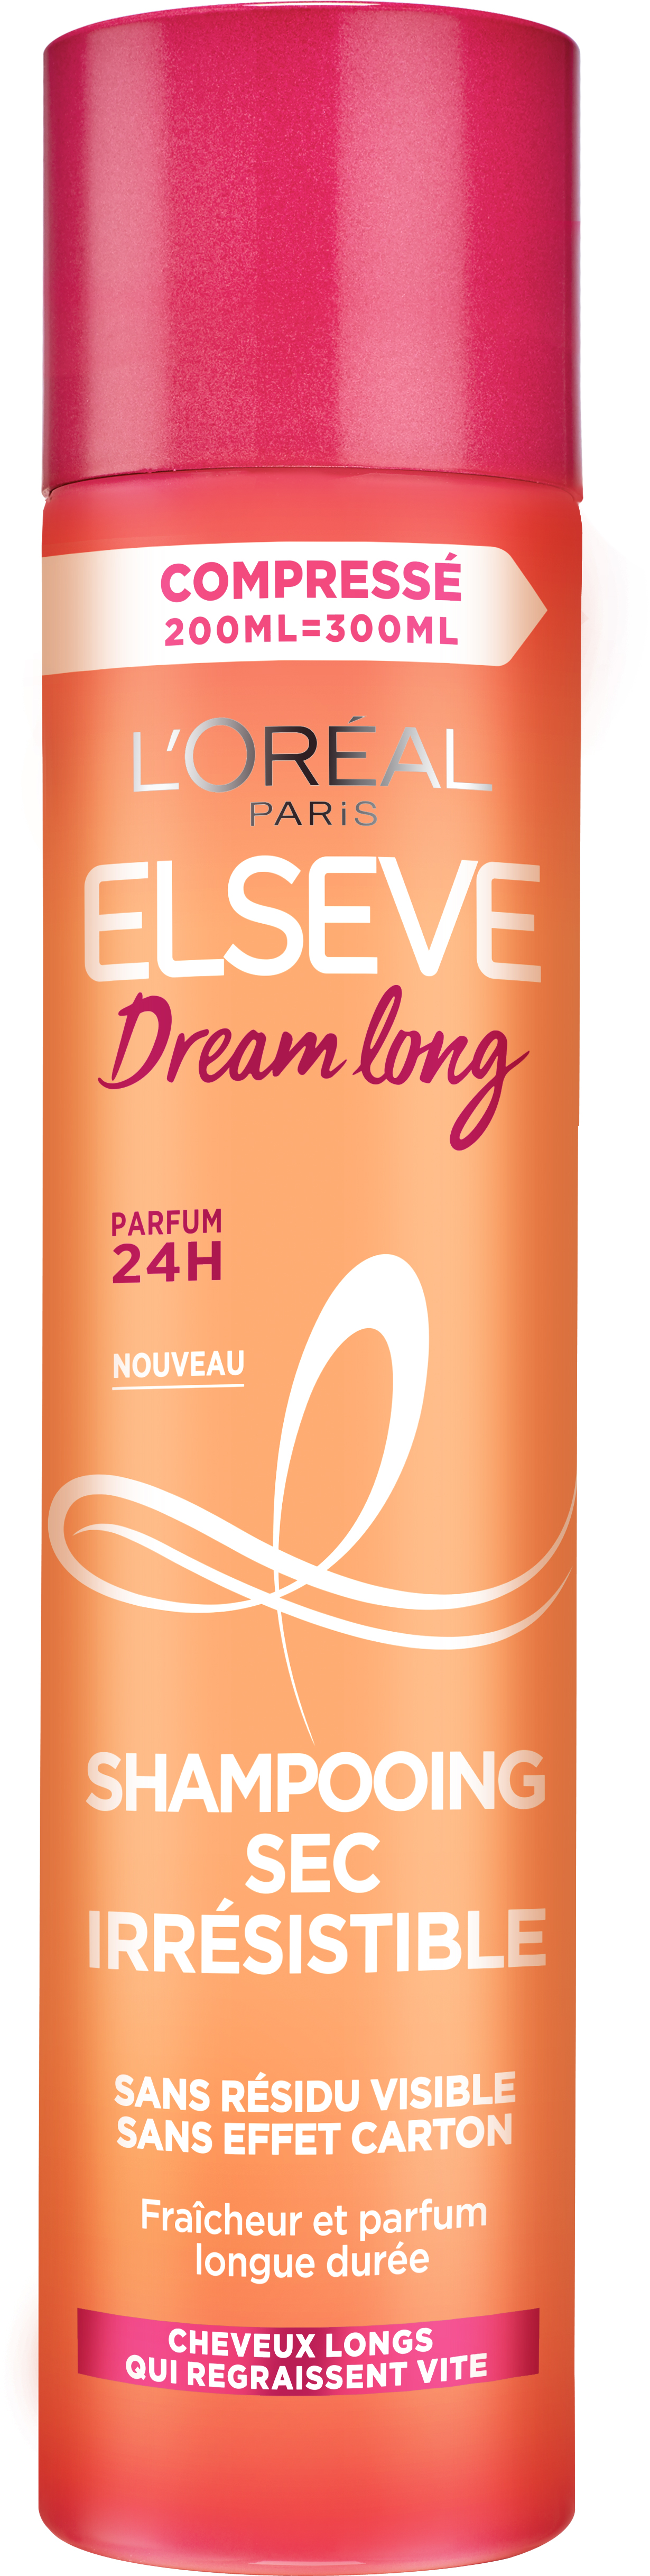 Сухий шампунь L'Oreal Paris Dream Long для довгого схильного до жирності волосся, 200 мл - фото 1